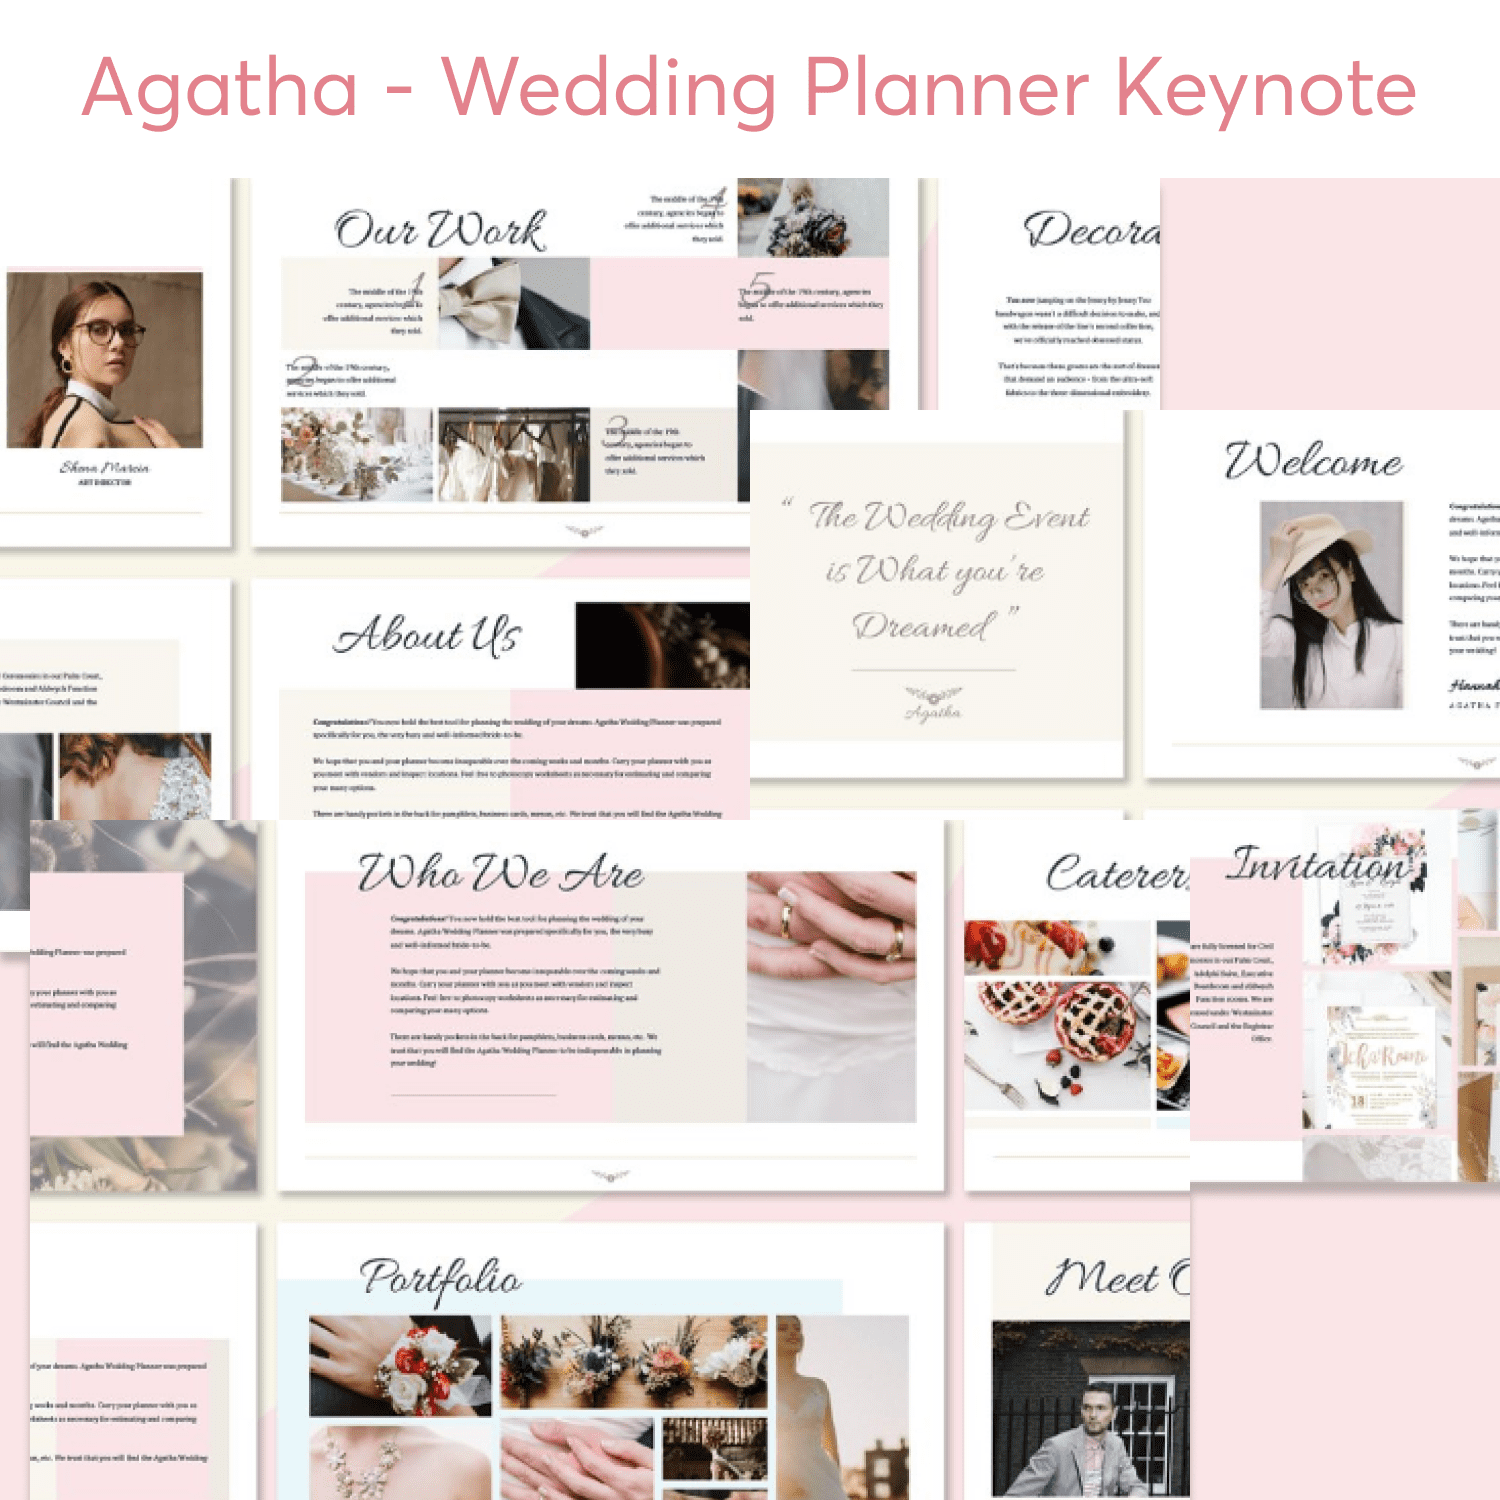 Agatha - Wedding Planner Keynote cover.